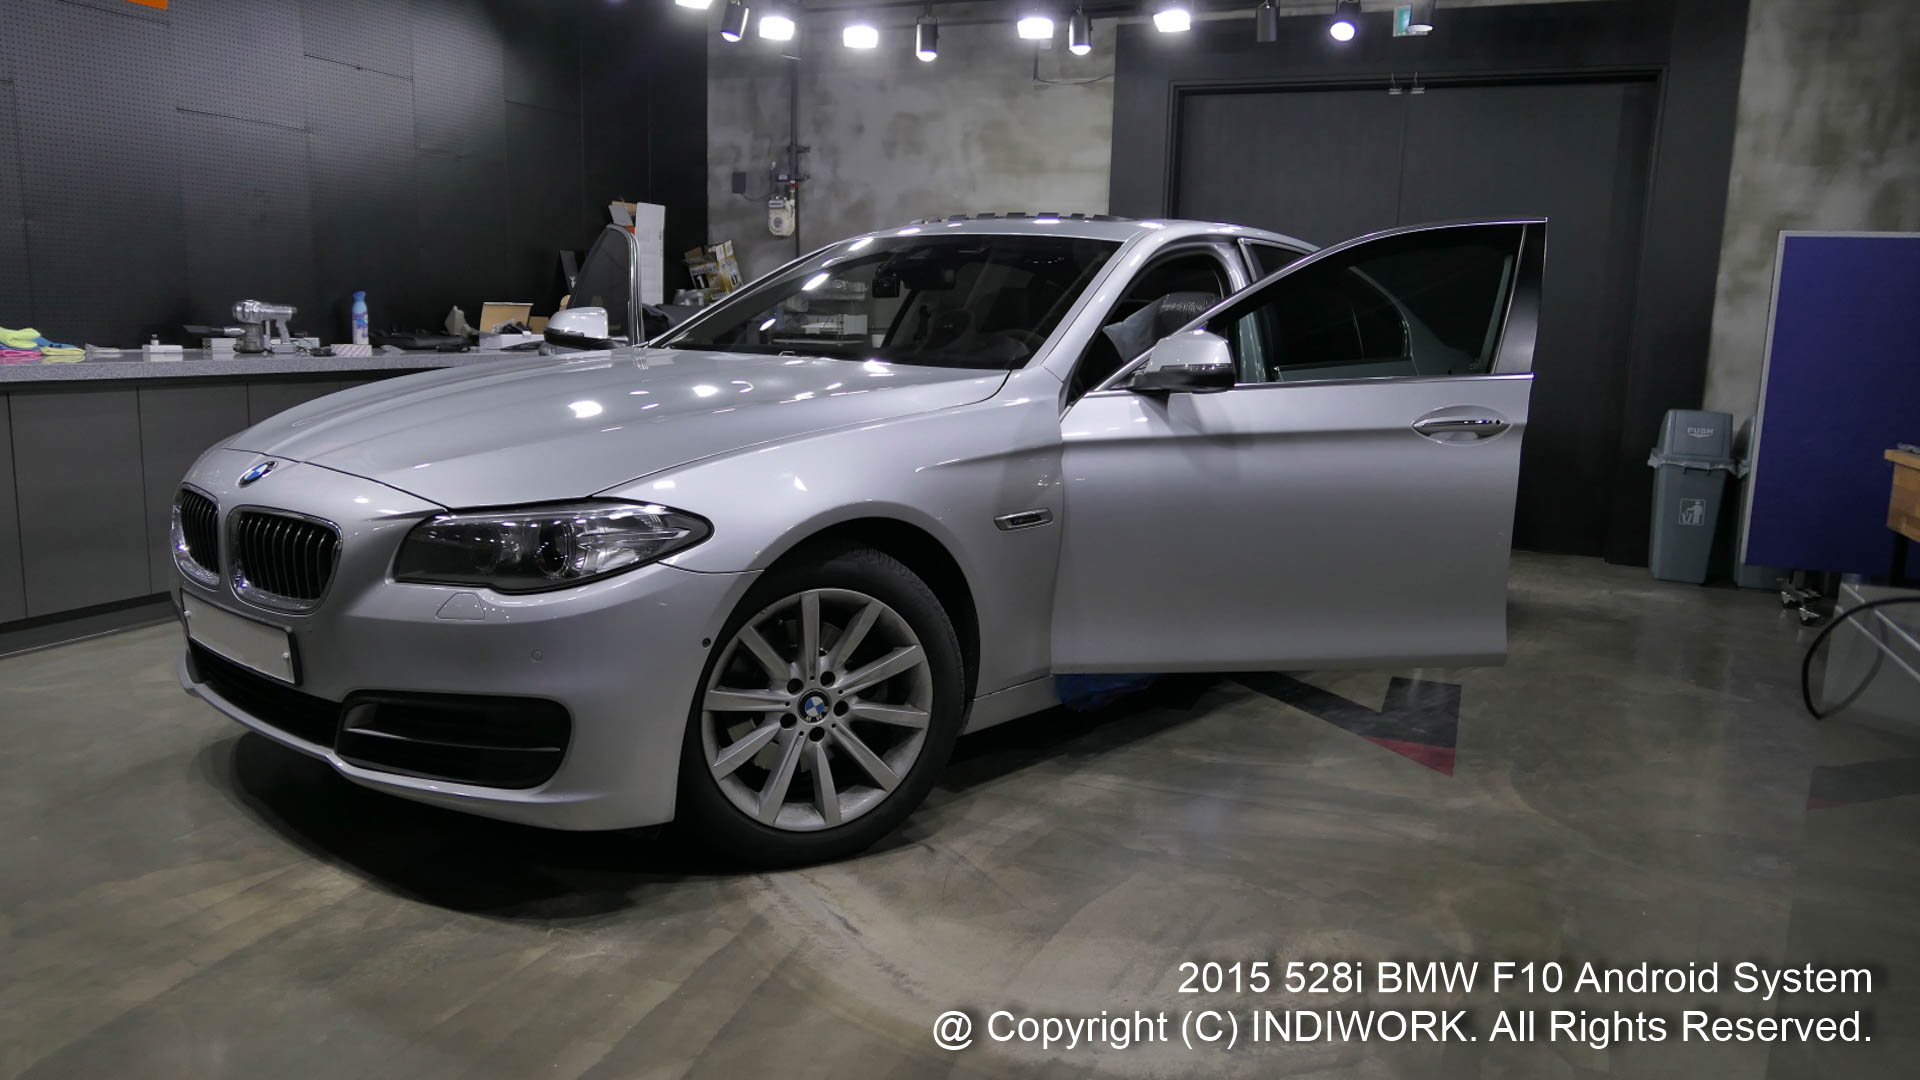 2015 BMW F10 520D 528i exterior